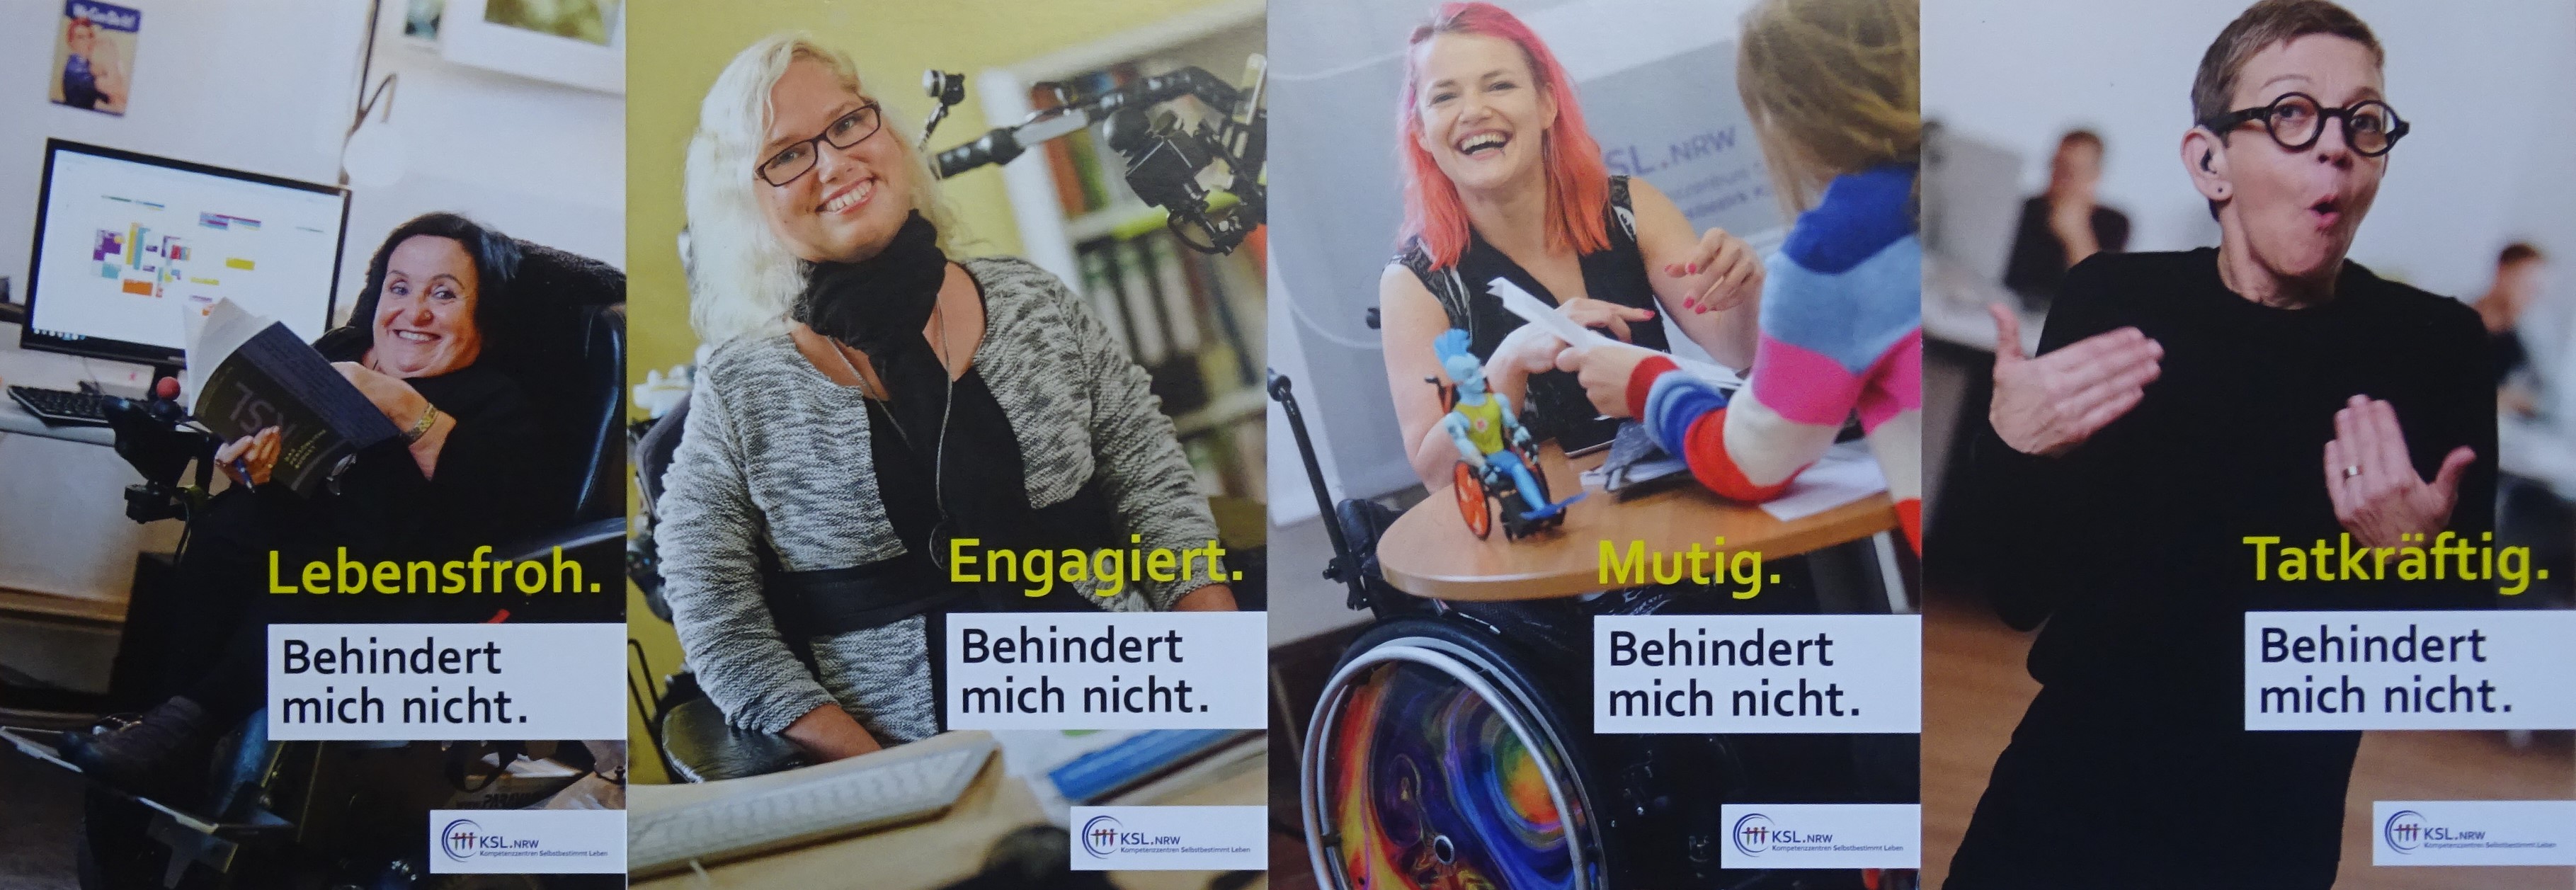 Das Bild zeigt vier Frauen mit Behinderung und das Motto der Postkartenaktion.